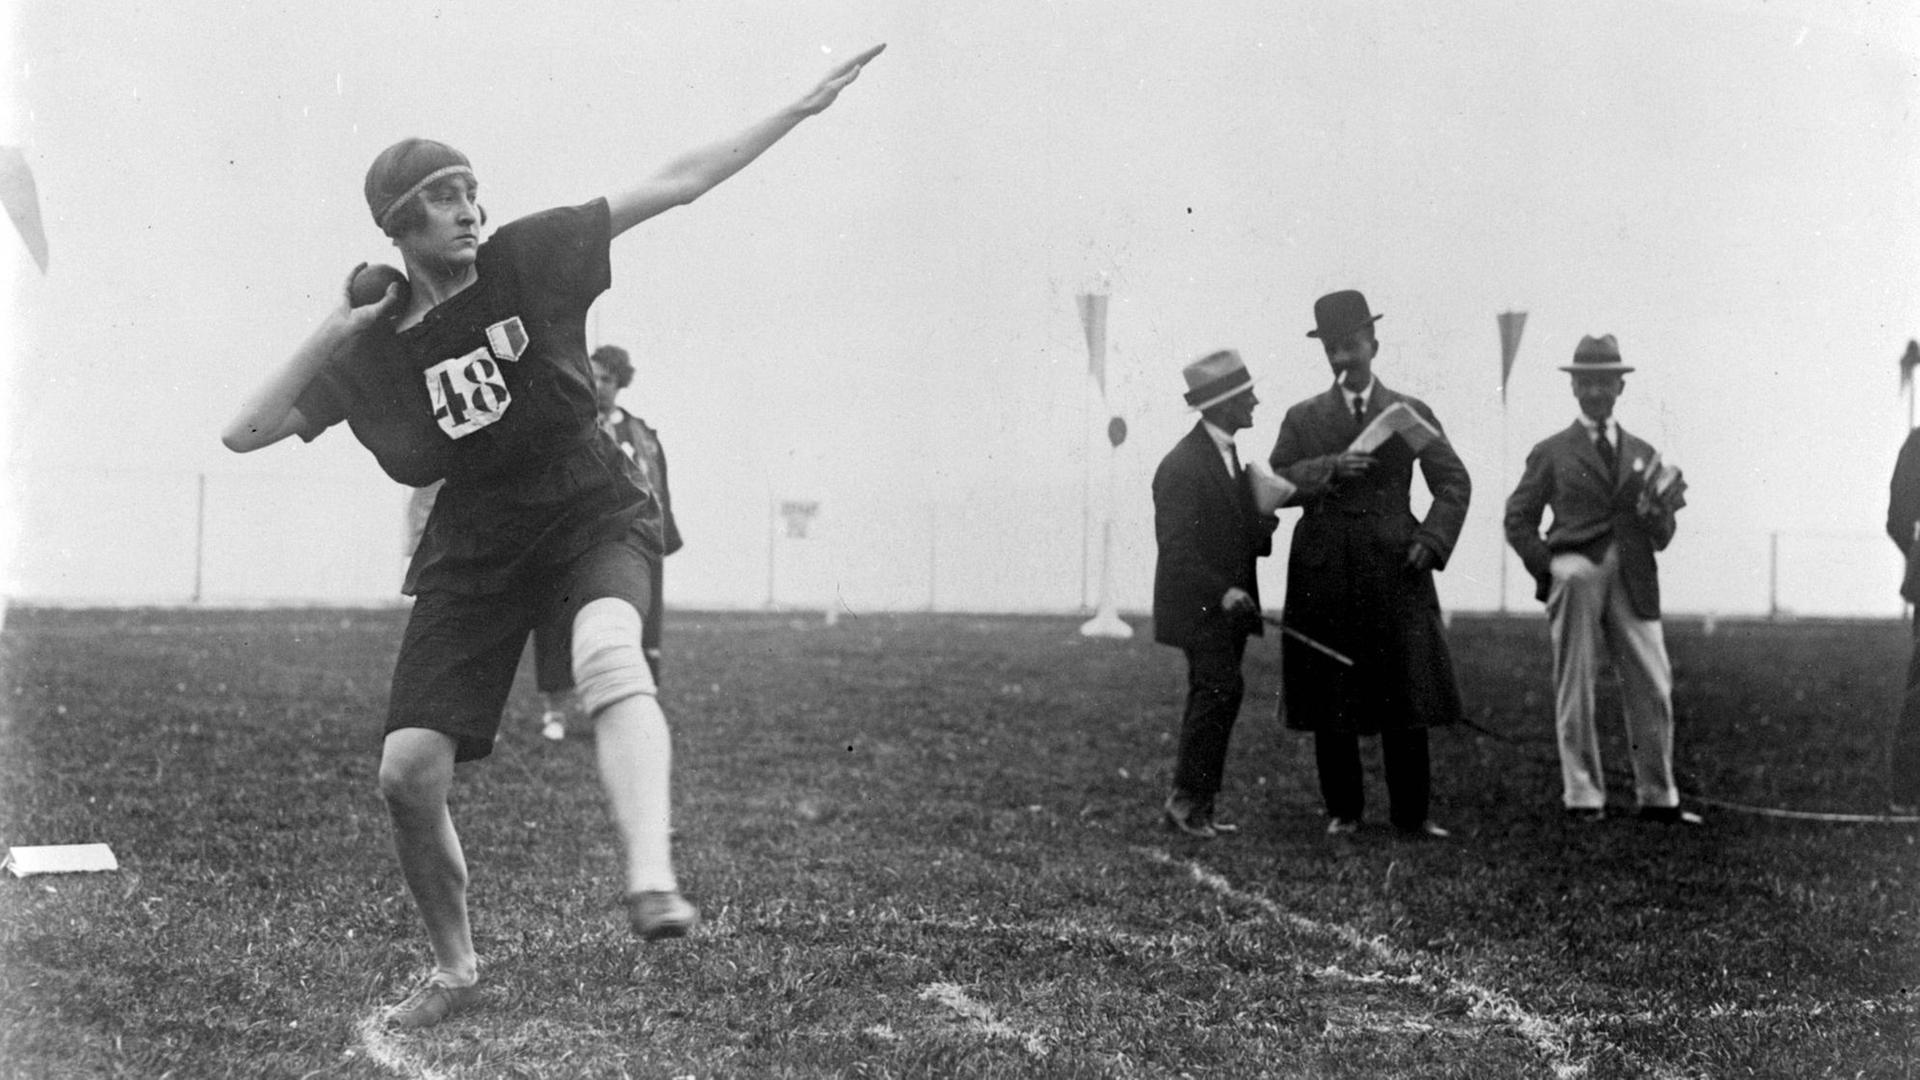 Ein Schwarzweiß-Foto zeigt eine Athletin mit einer Kappe, die mit einem Ausfallschritt Anlauf zum Kugelstoßen nimmt. Im Hintergrund sind zwei Männer mit Borsalino-Hüten ins Gespräch vertieft zu sehen